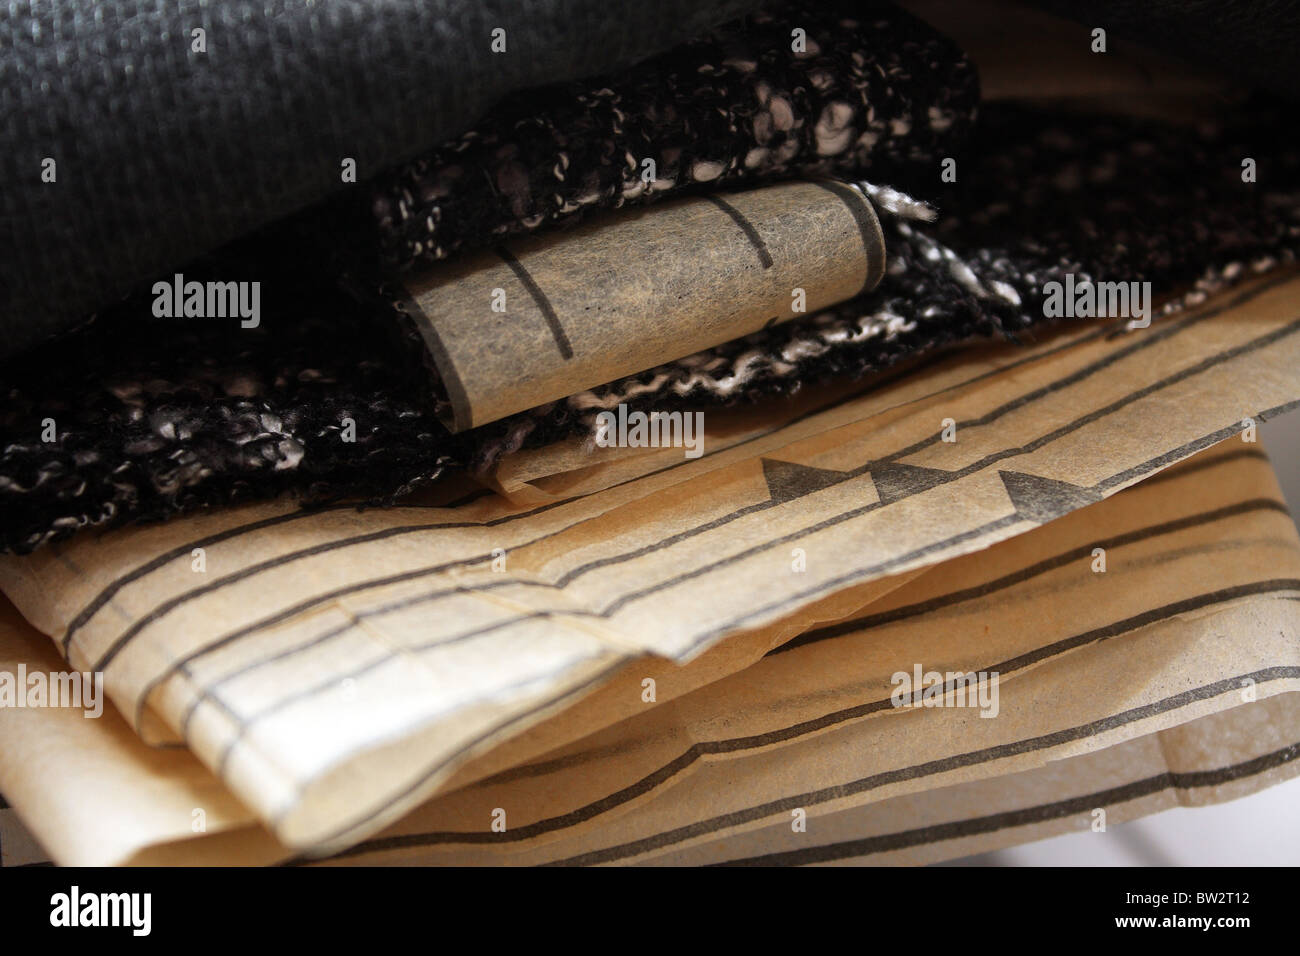 Un modèle de couture et de tissus montrant les lignes de pliage et d'encoches Banque D'Images